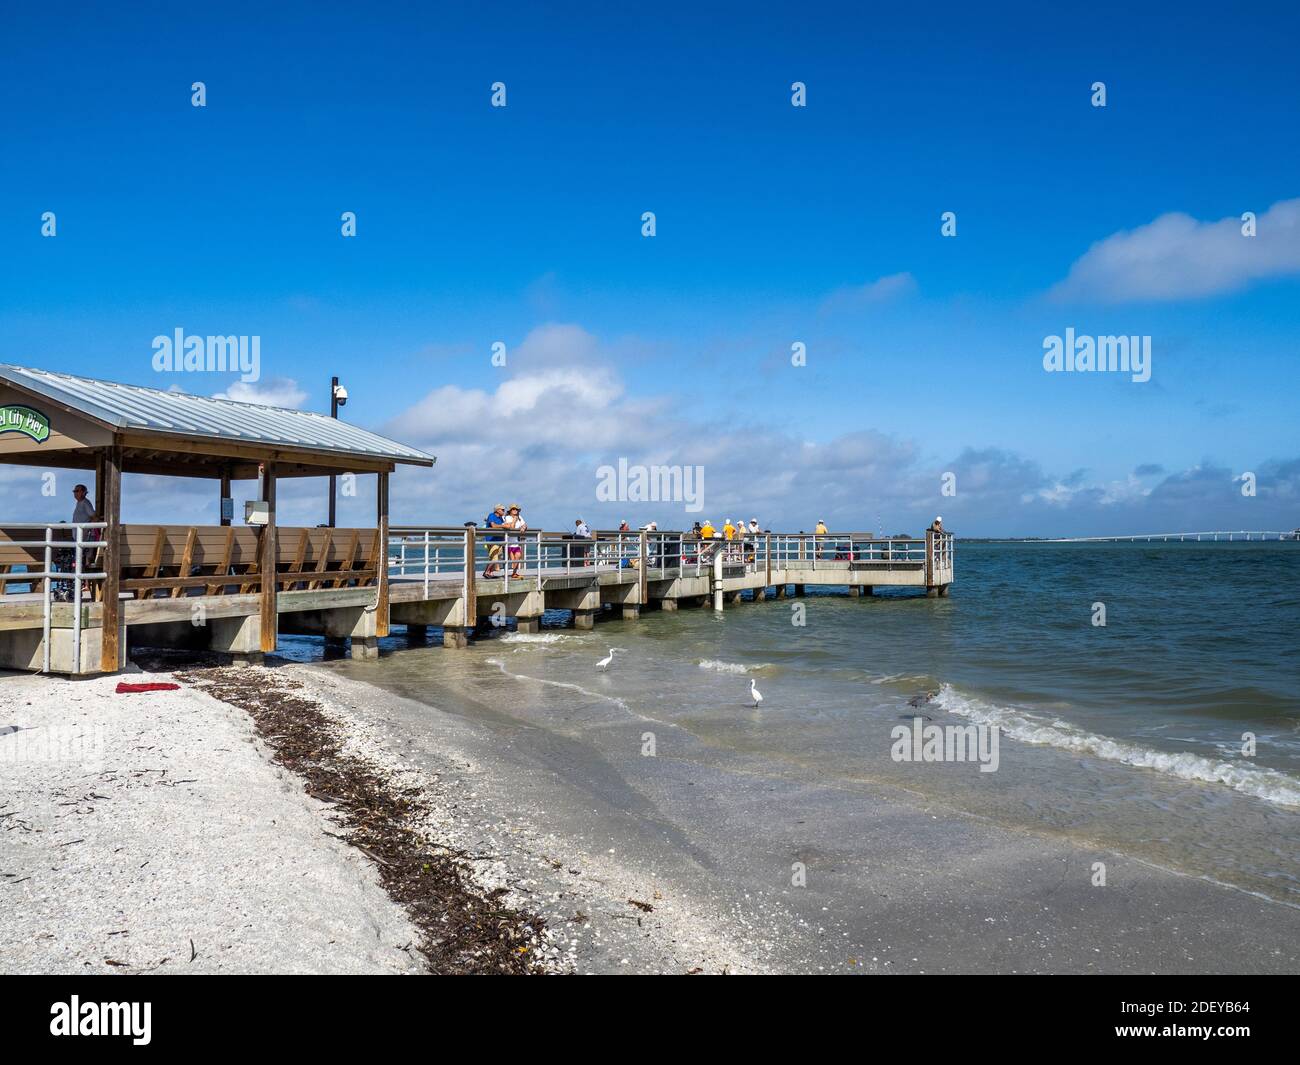 El muelle de pesca de Sanibel Island en Sanibel Island Costa del Golfo de Florida ion los Estados Unidos Foto de stock